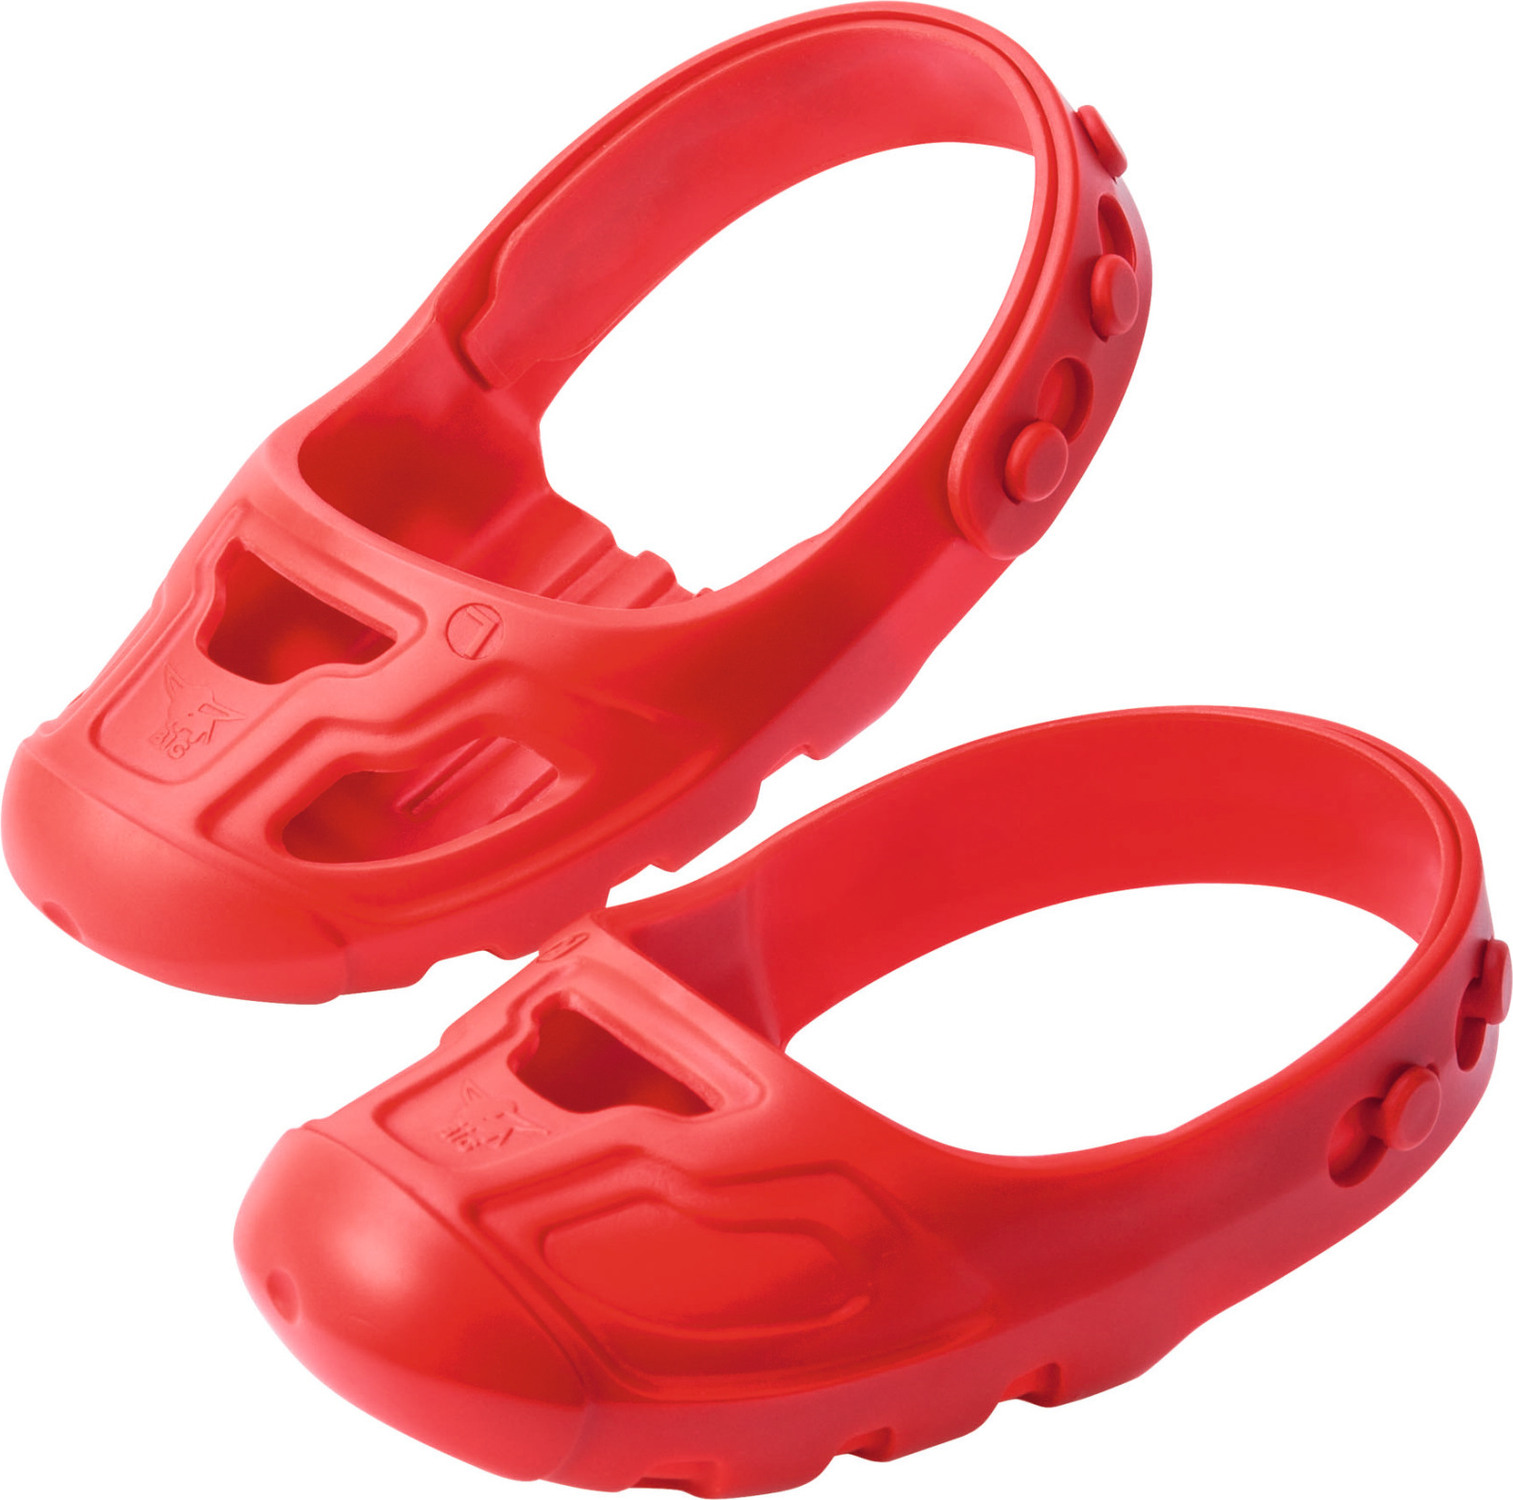 Dětské ochranné návleky na boty Shoe-Care BIG - červené